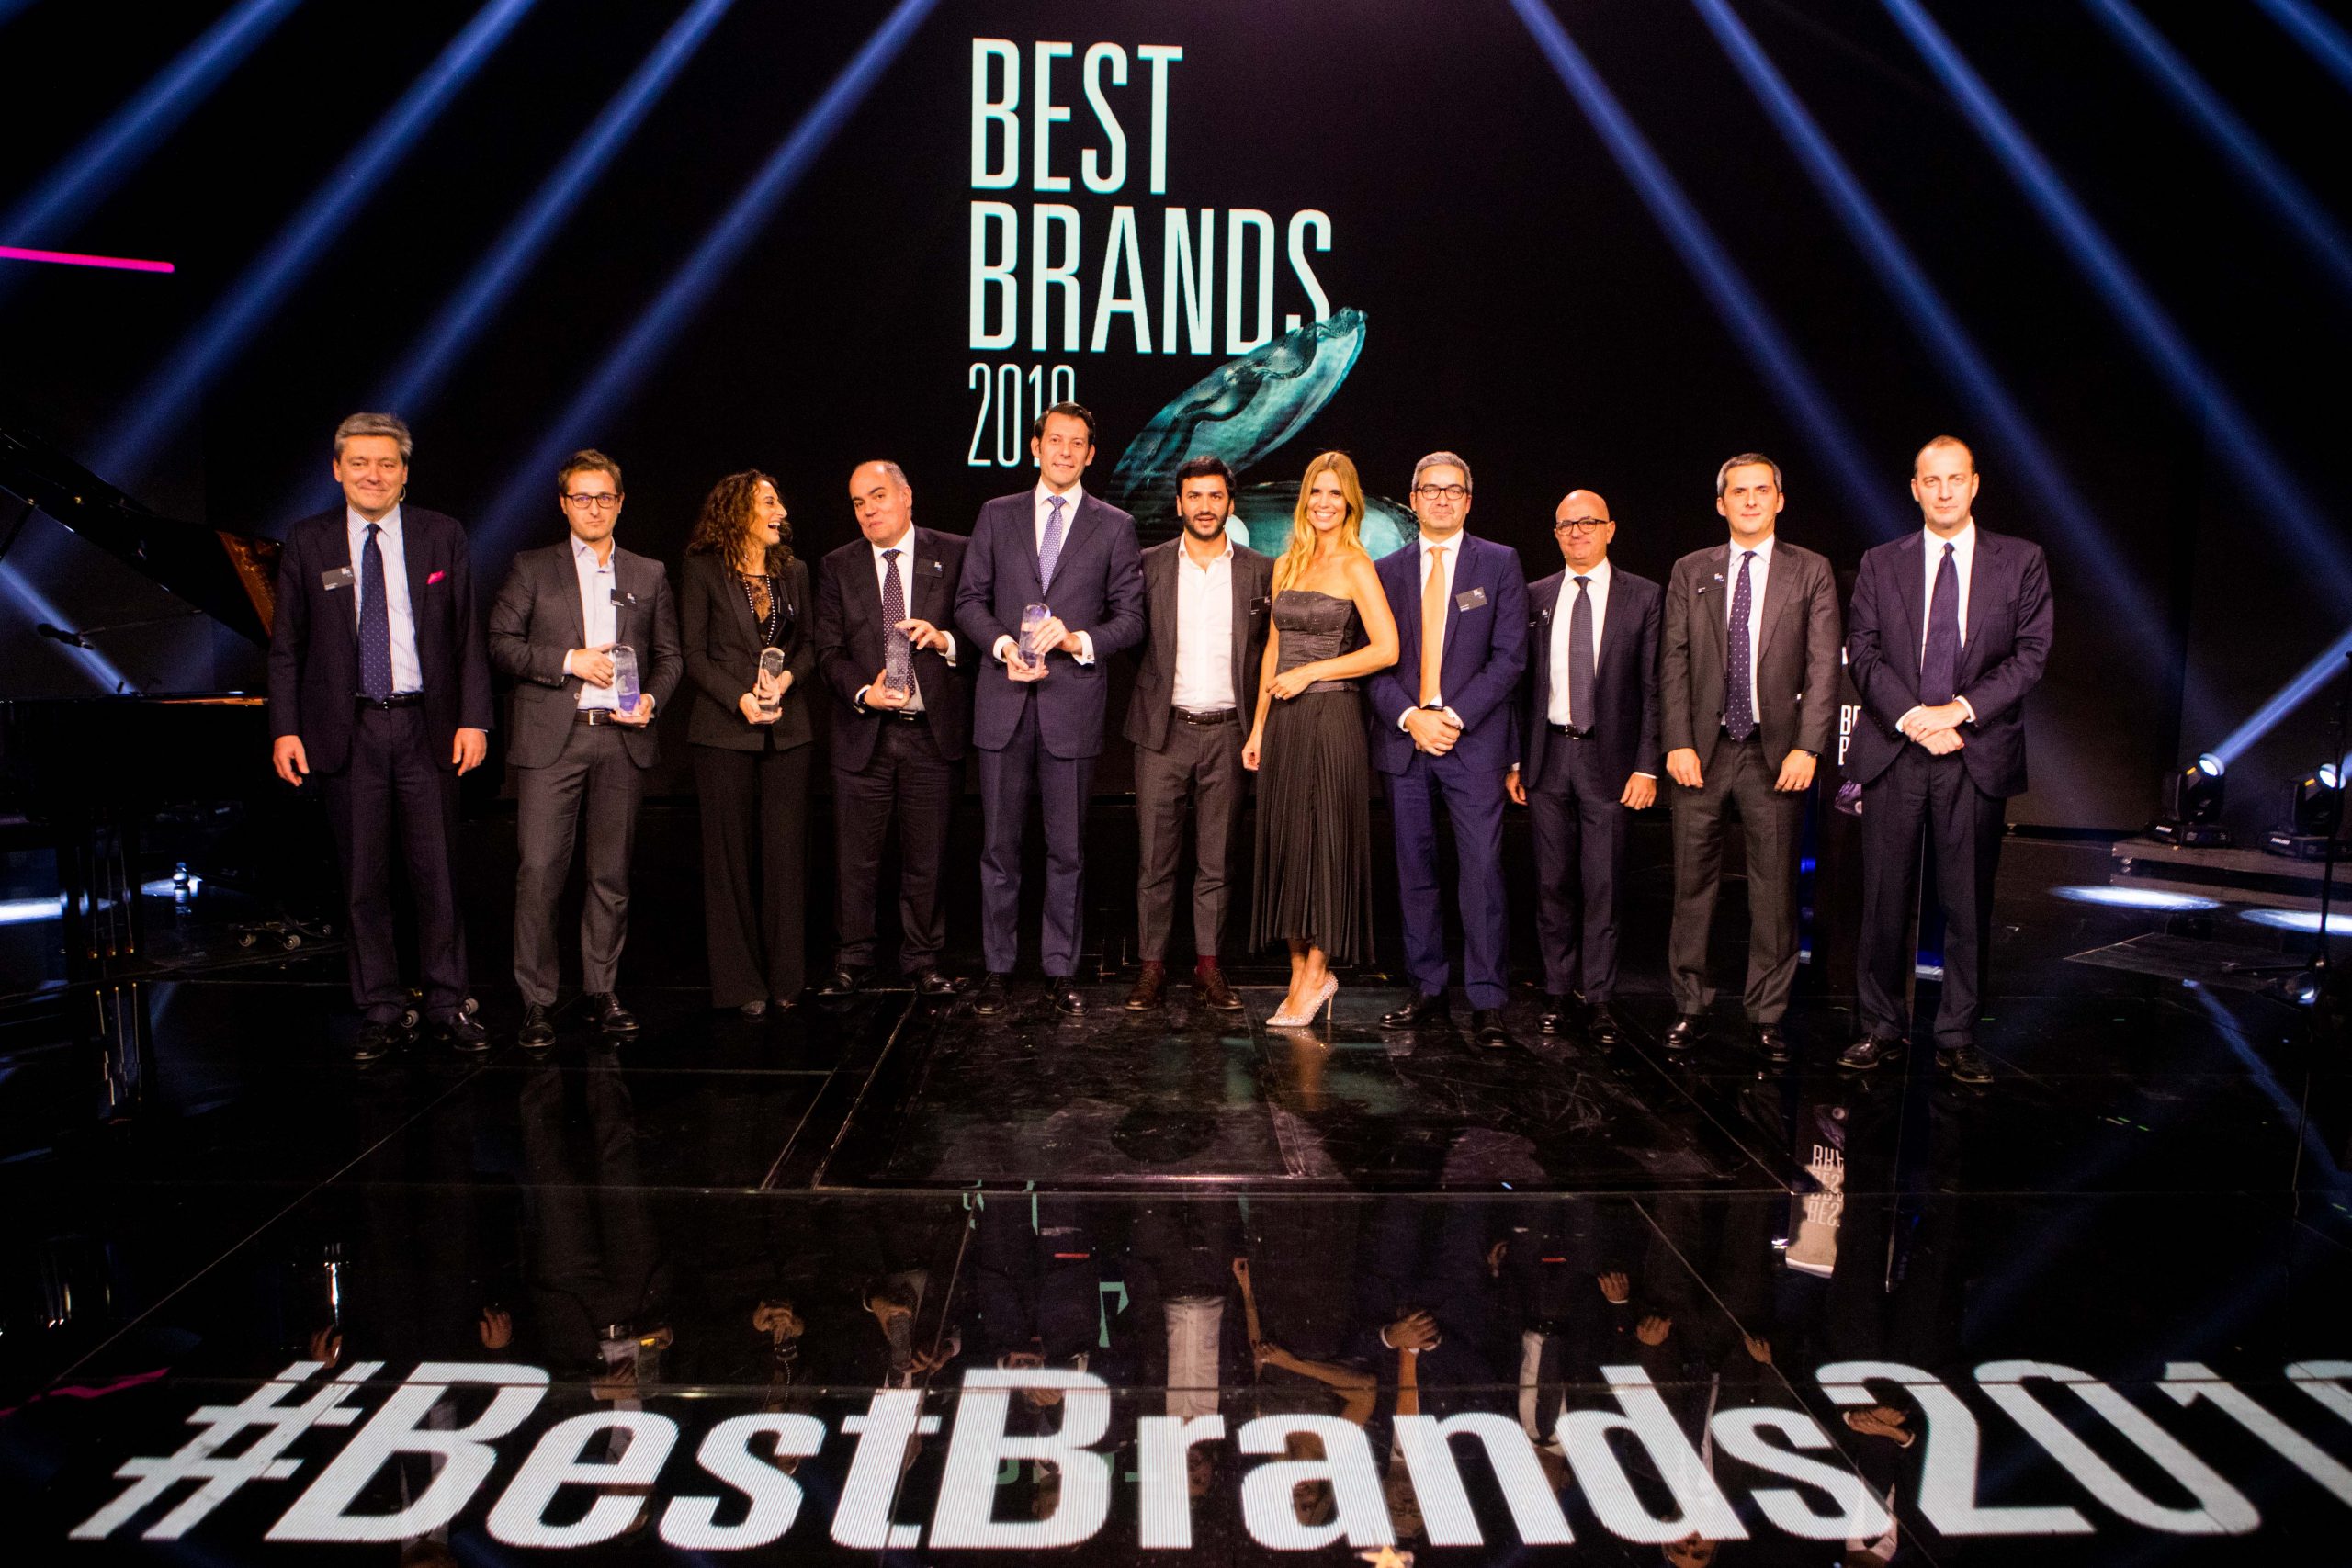 Best Brands Italia 2022: “Le Azioni dell’Emozione” guidano le marche